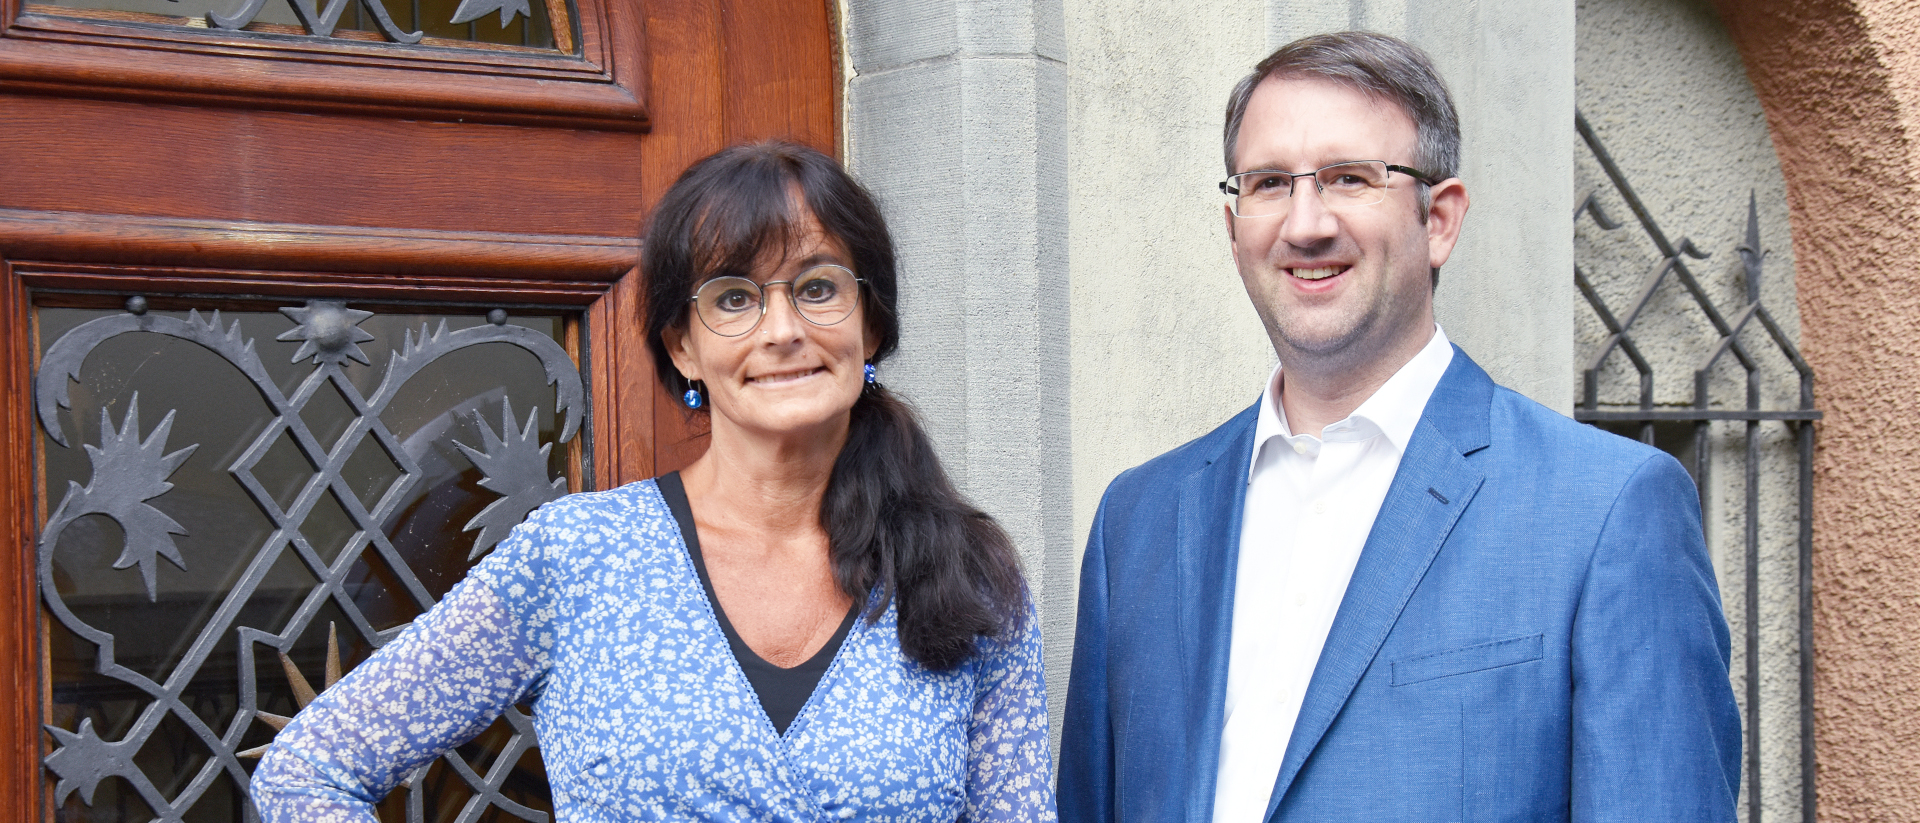 Karin Iten und Stefan Loppacher: neues Leitungsduo des SBK-Fachgremiums "Sexuelle Übergriffe im kirchlichen Umfeld"